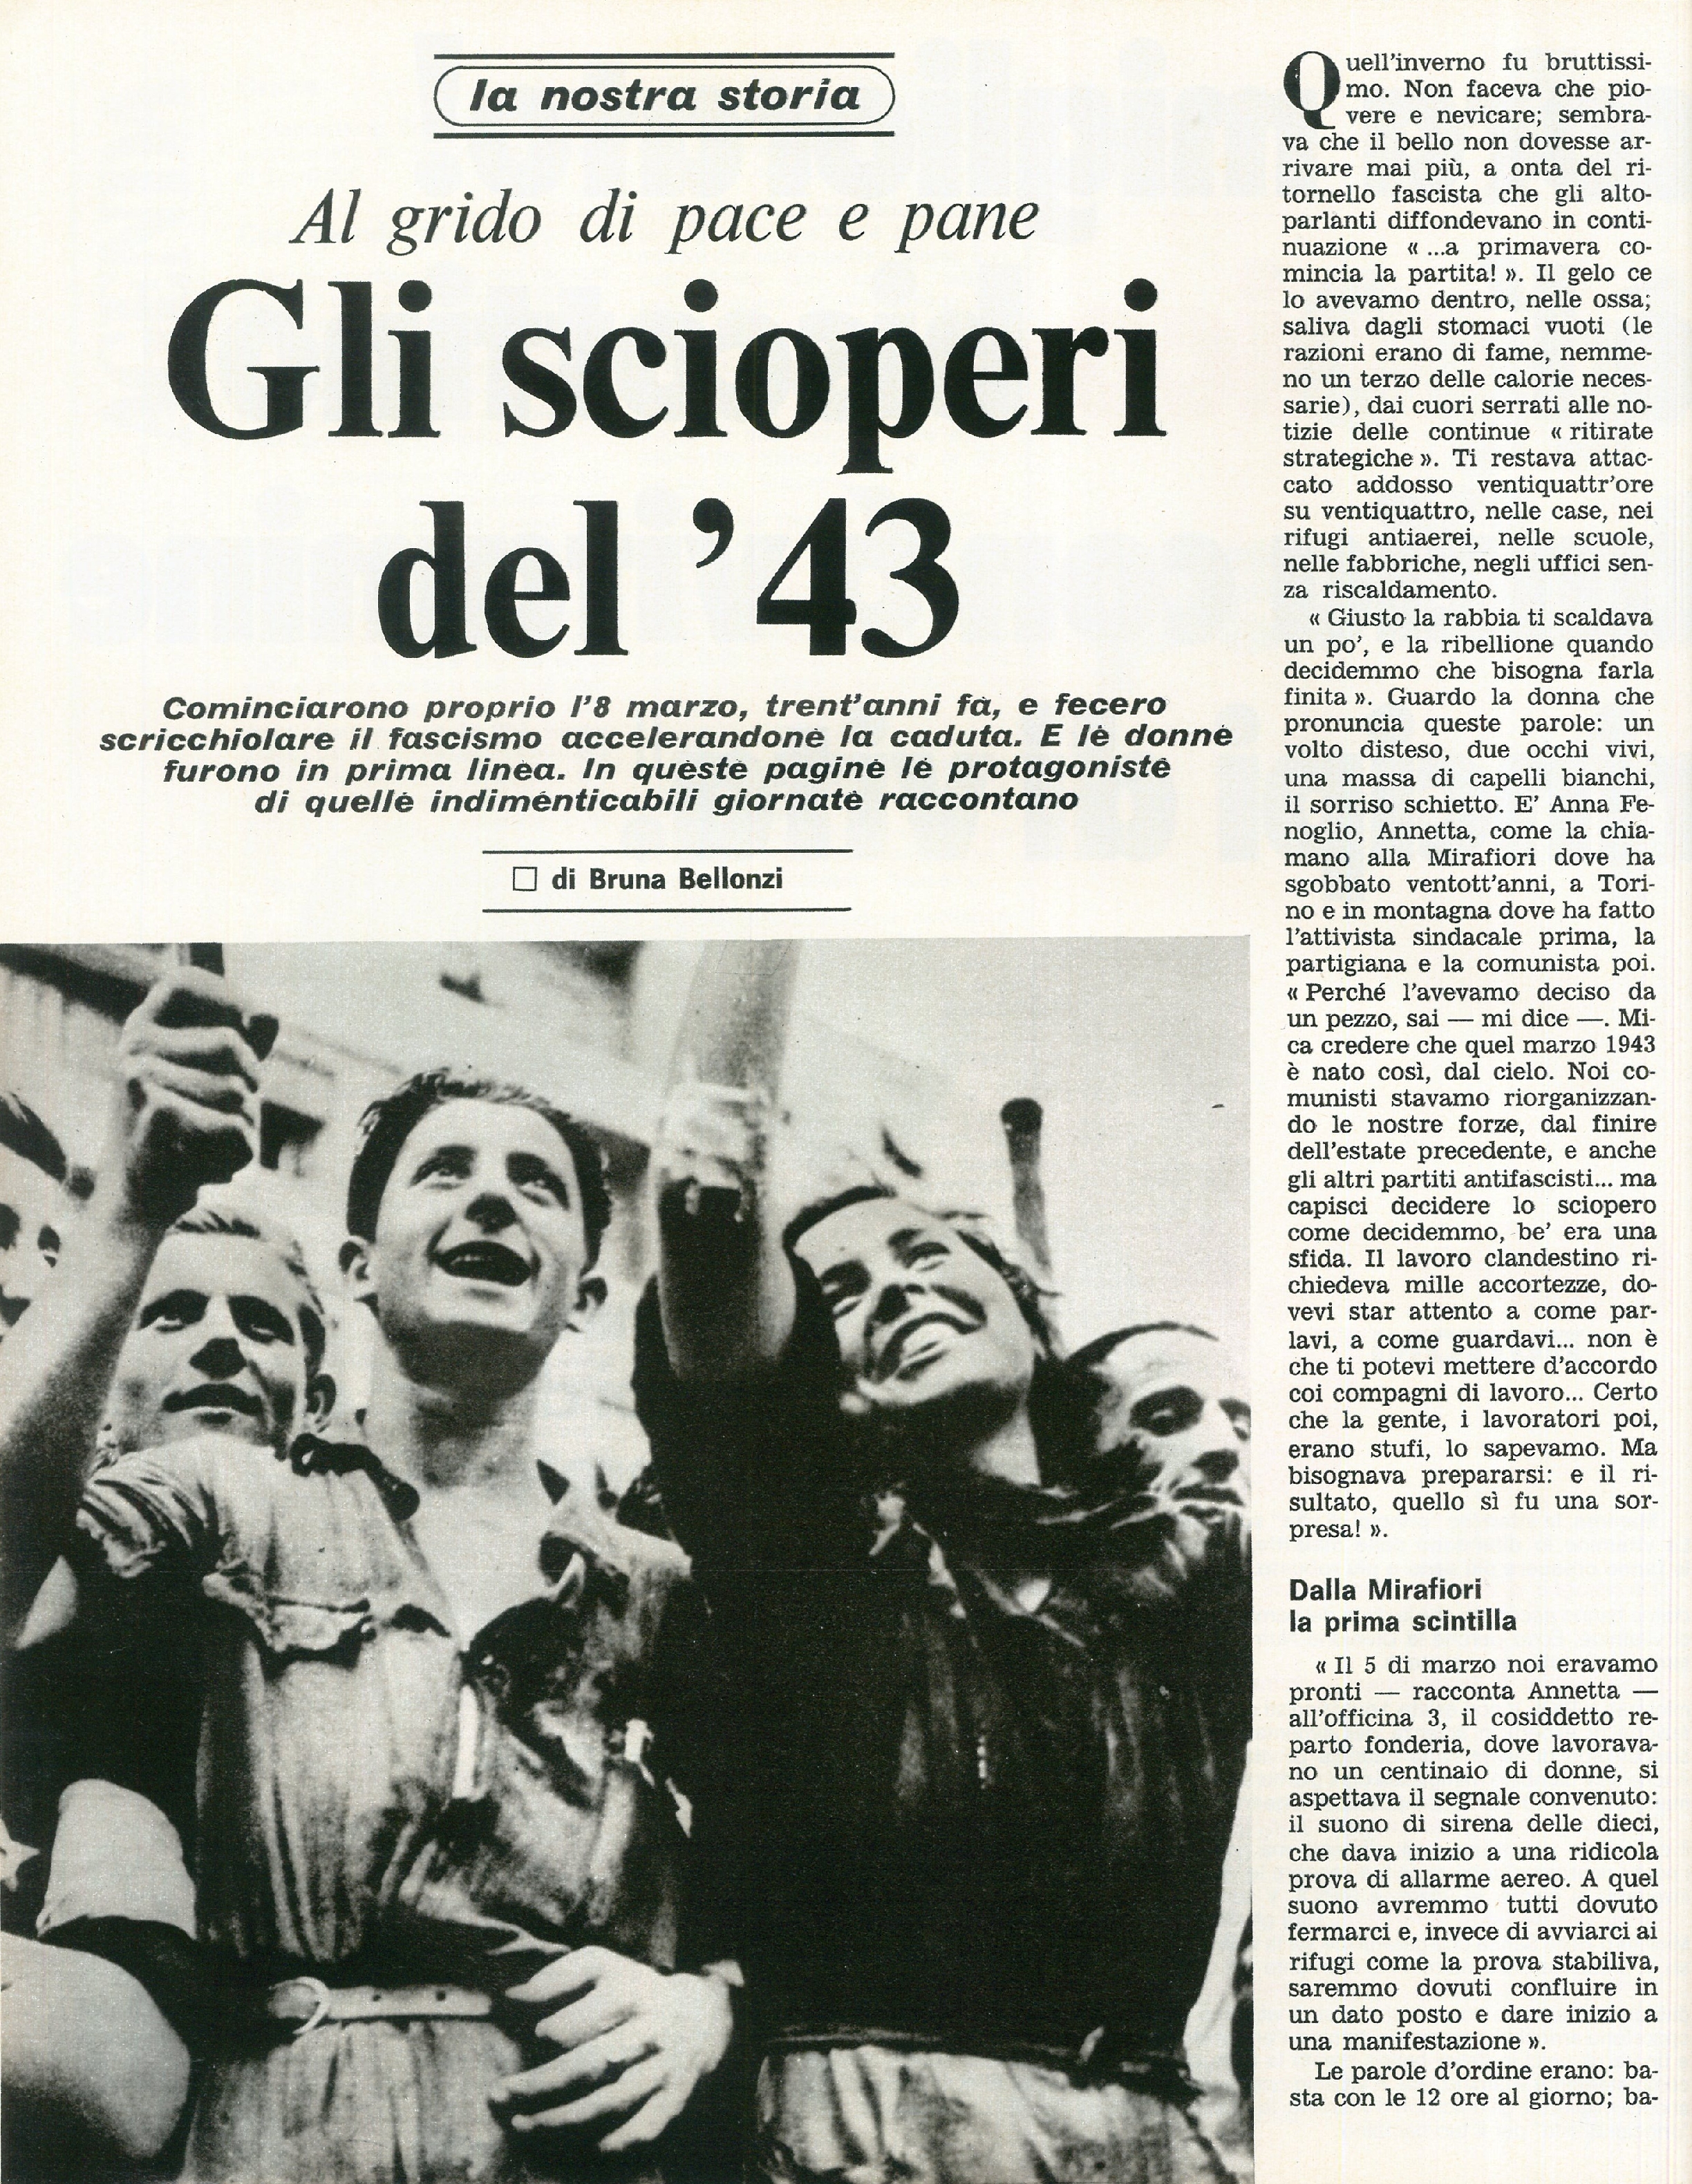 Foto: (nr 7/10) Speciale 8 Marzo: “siamo tutte meridionali”, come vivono le donne dal nord al sud Italia. Esempi di donne nel mondo. Contraccezione e diritto all’aborto, una battaglia in evoluzione. 8 Marzo 1943 scoppiavano i primi scioperi nella fabbrica 